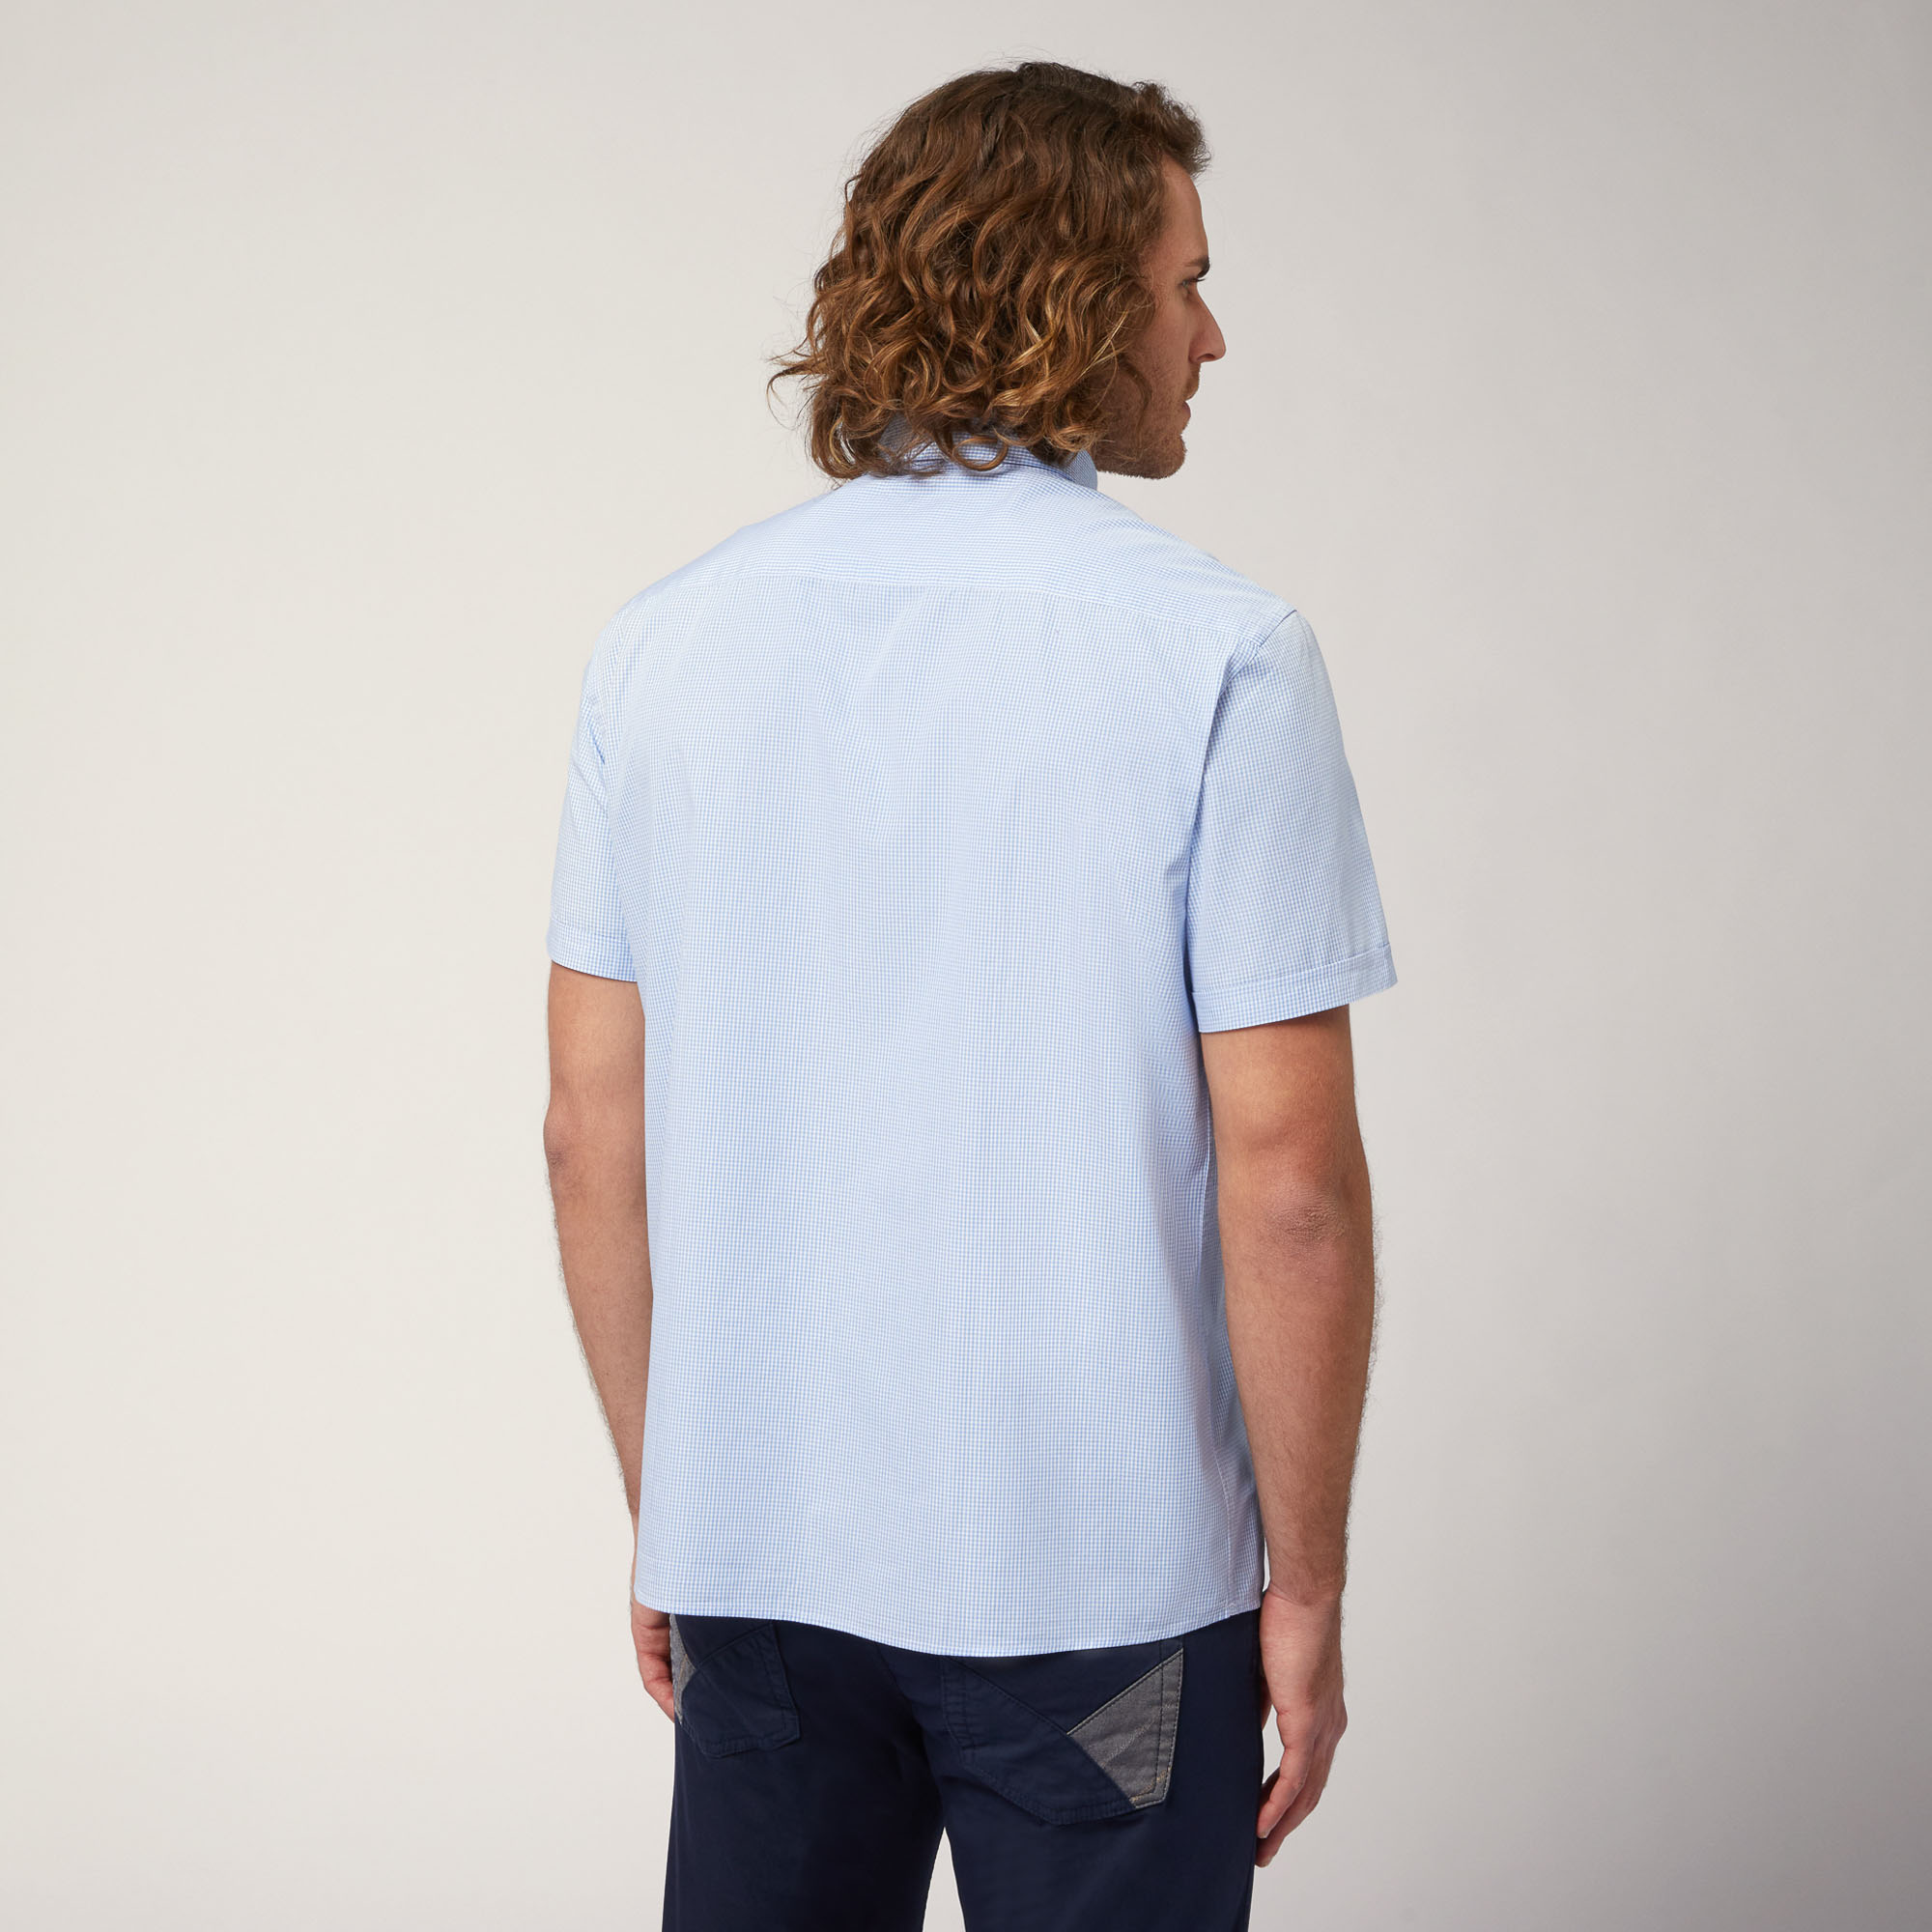 Hemd aus Bio-Baumwollpopeline mit kurzen Ärmeln, Himmelblau, large image number 1